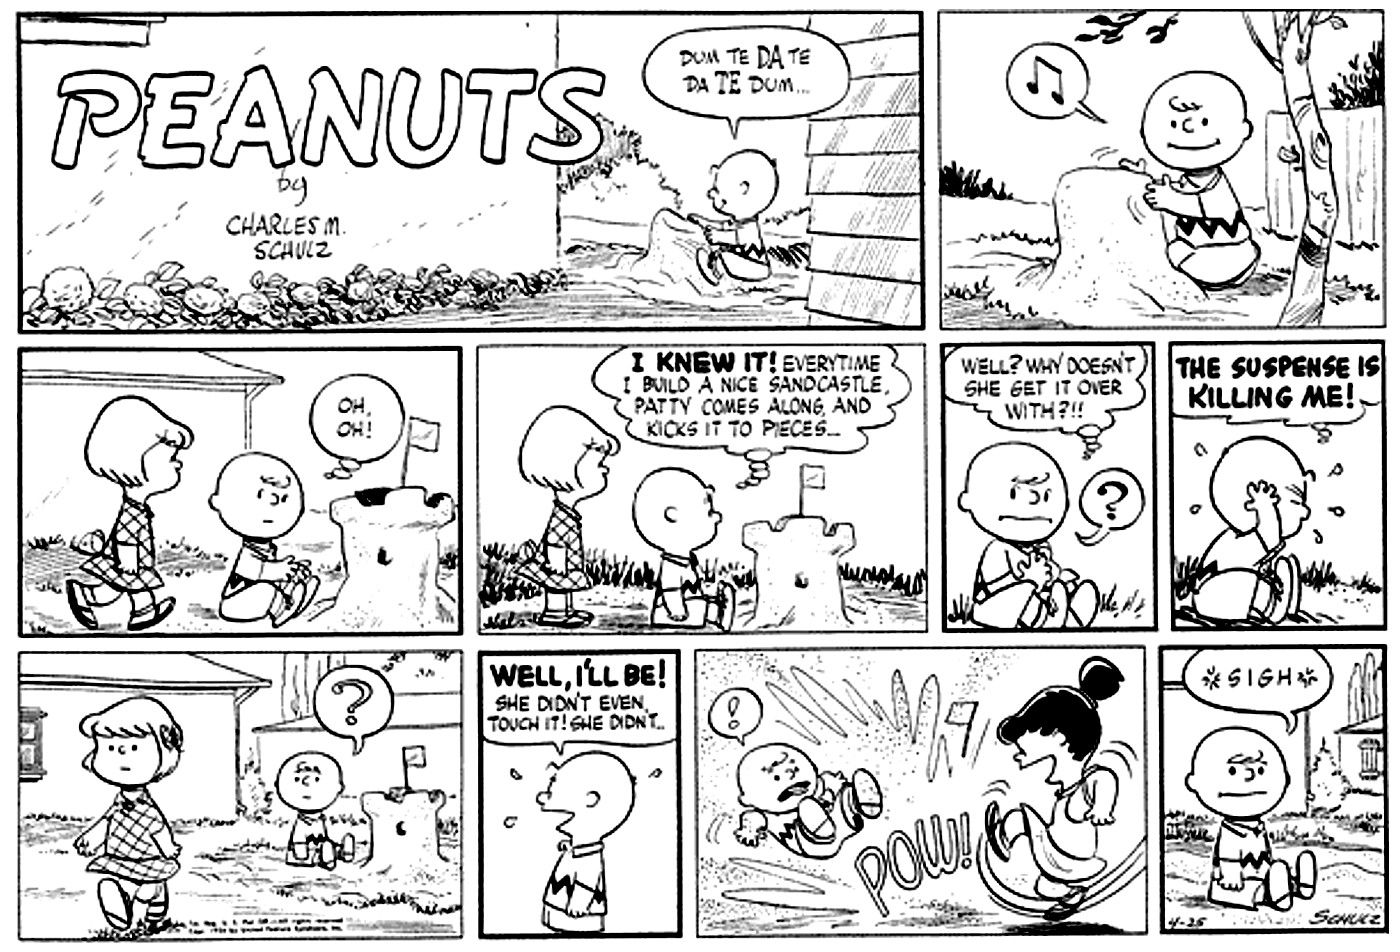 Quadrinhos de amendoim onde o castelo de areia de Charlie Brown é derrubado